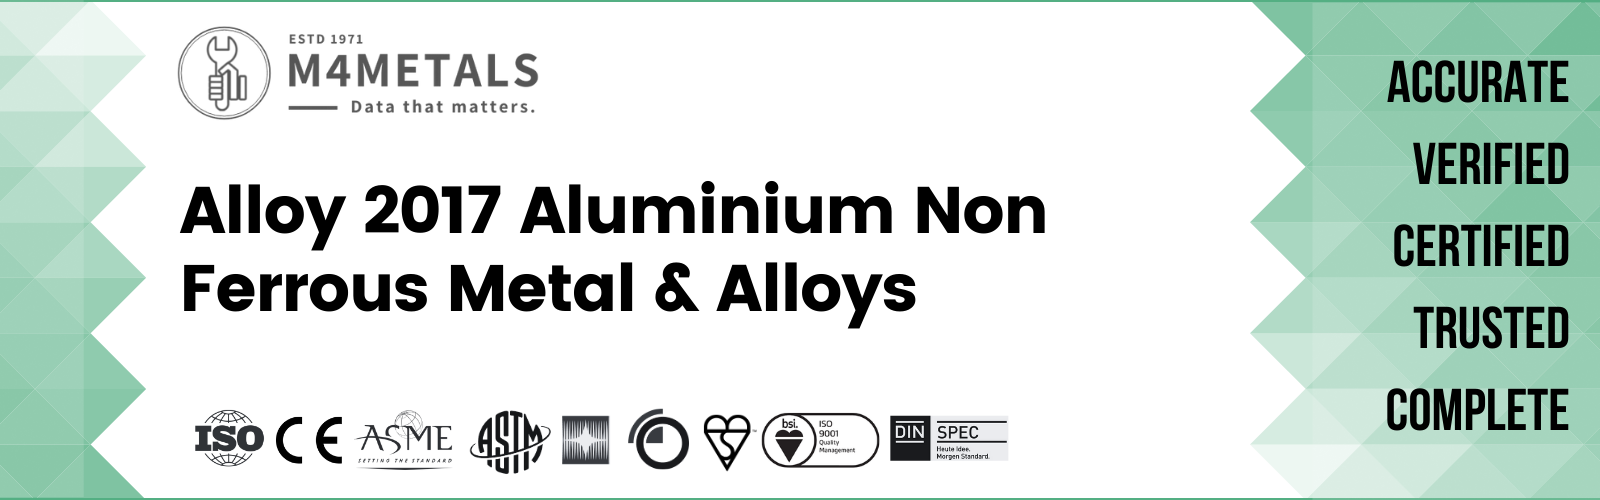 Aluminium Alloy 2017